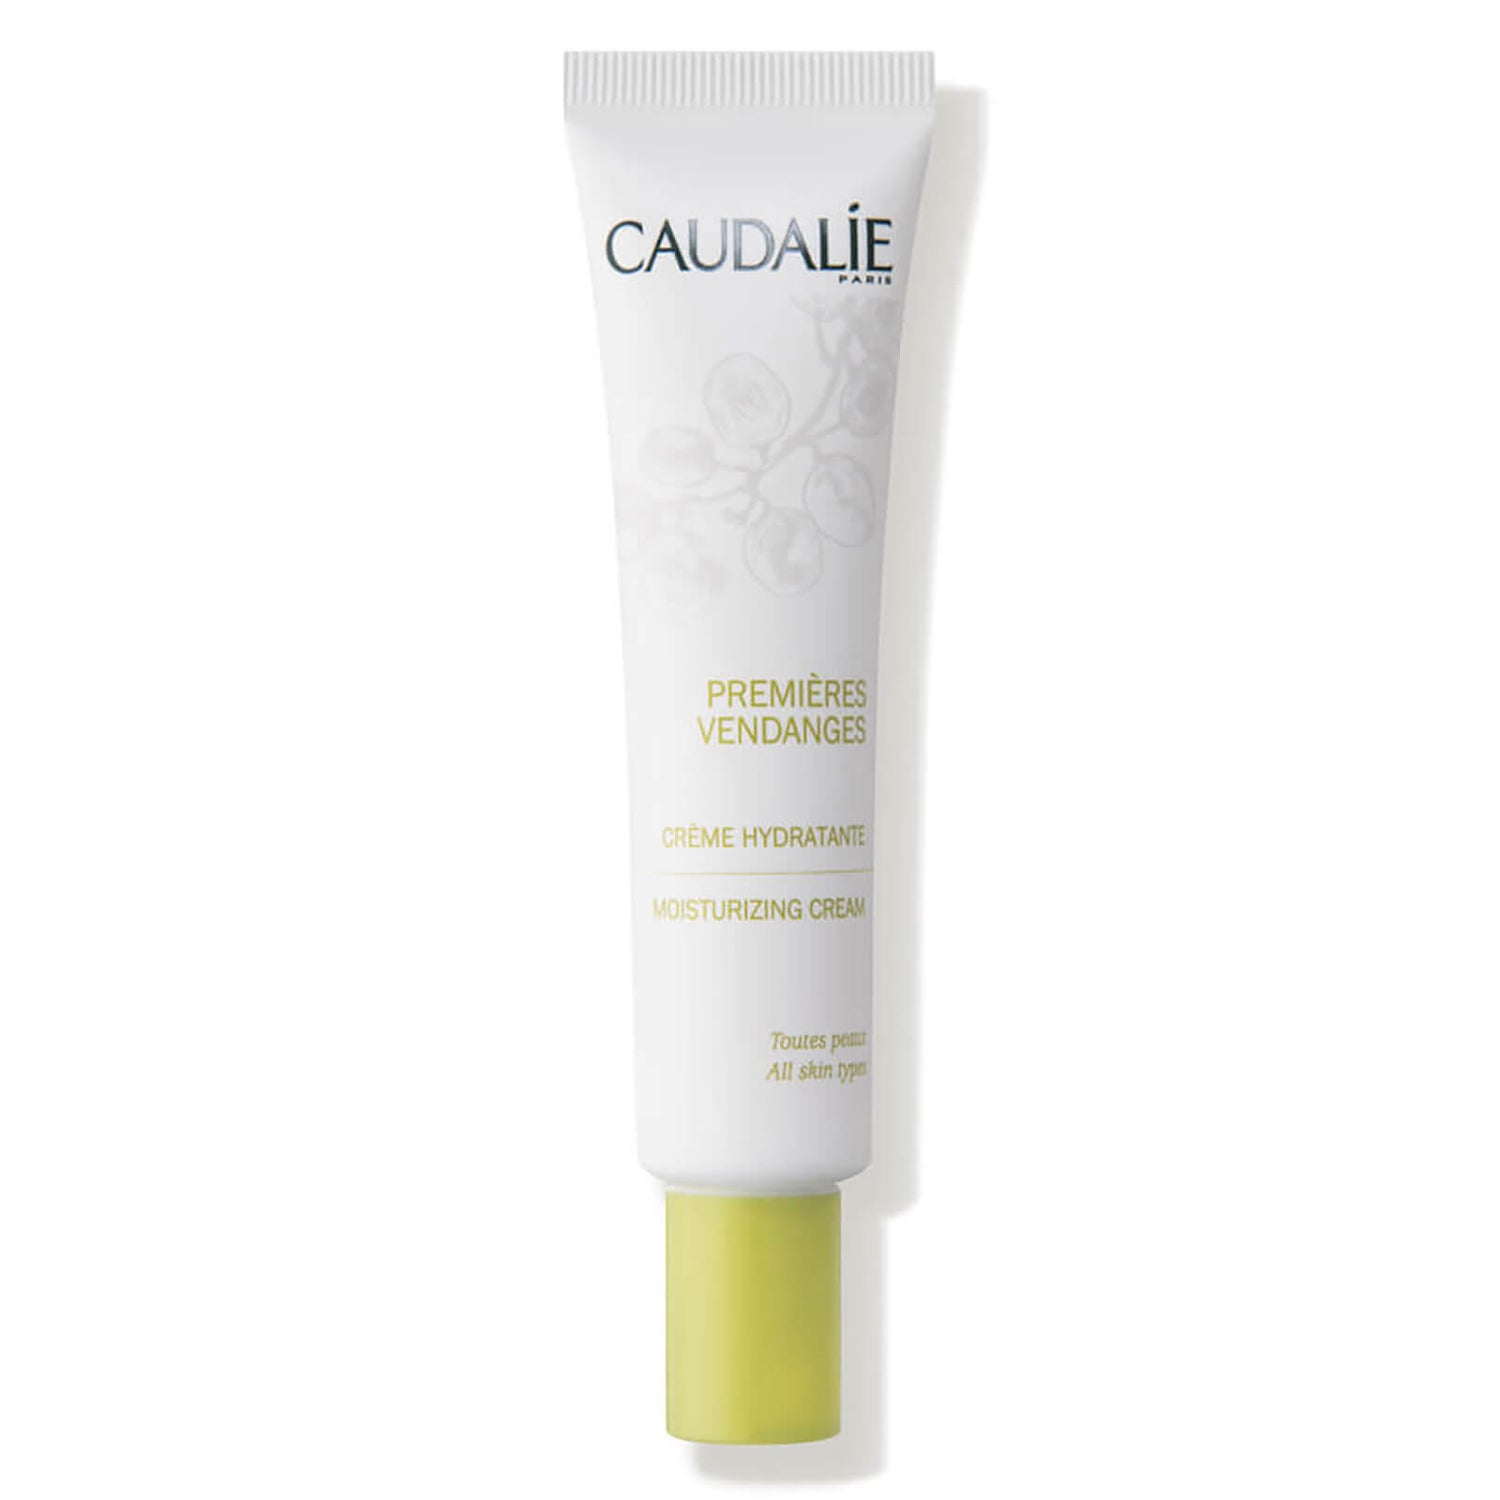 Caudalie Premieres Vendanges Moisturisng Cream (40 ml)